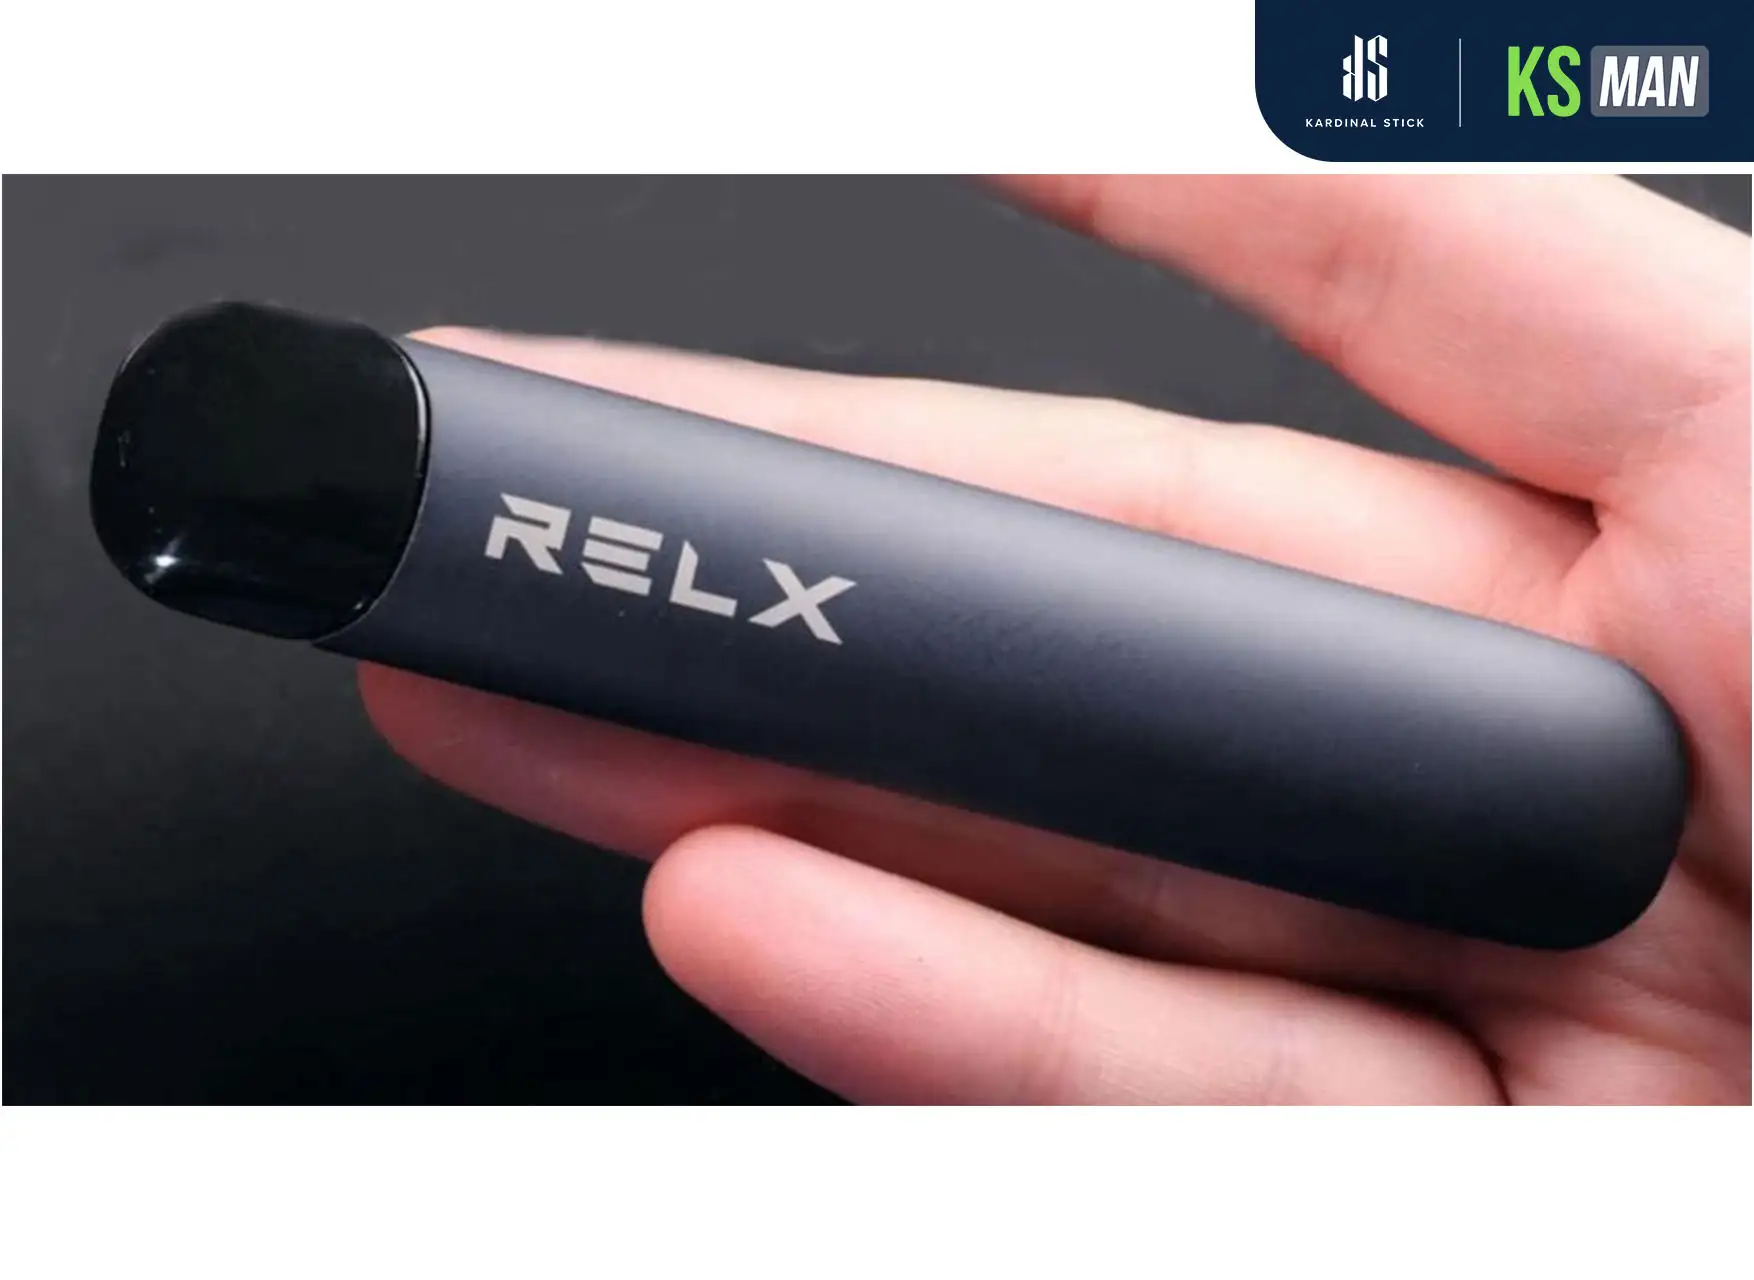 Relx คืออะไร